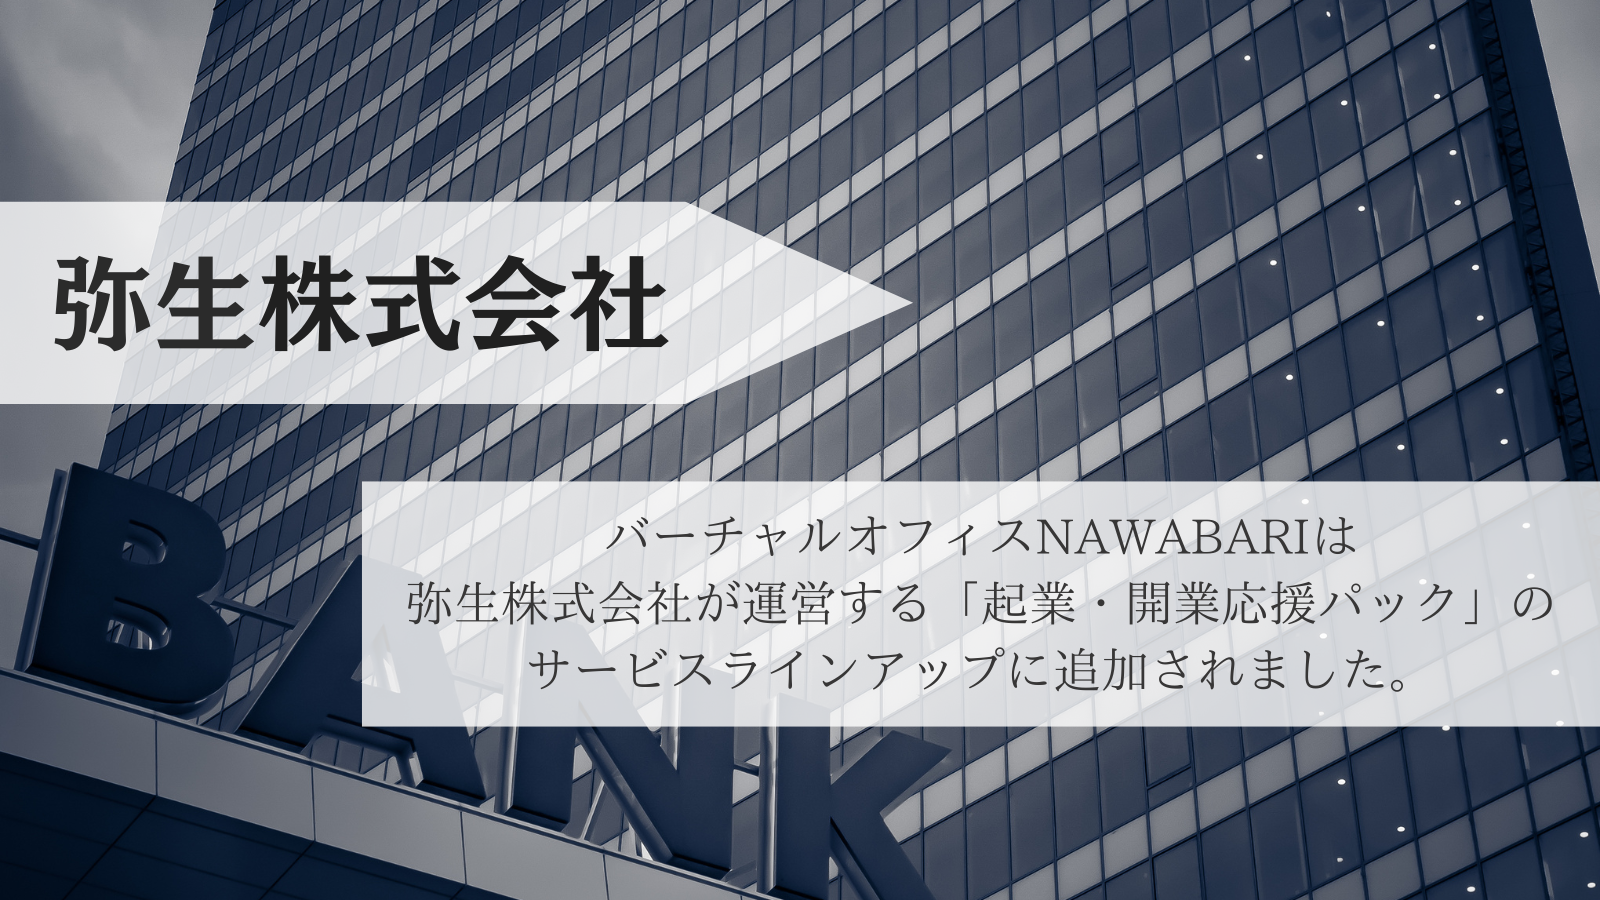 弥生株式会社の運営する「起業・開業応援パック」のサービスラインアップにNAWABARIが追加されました。